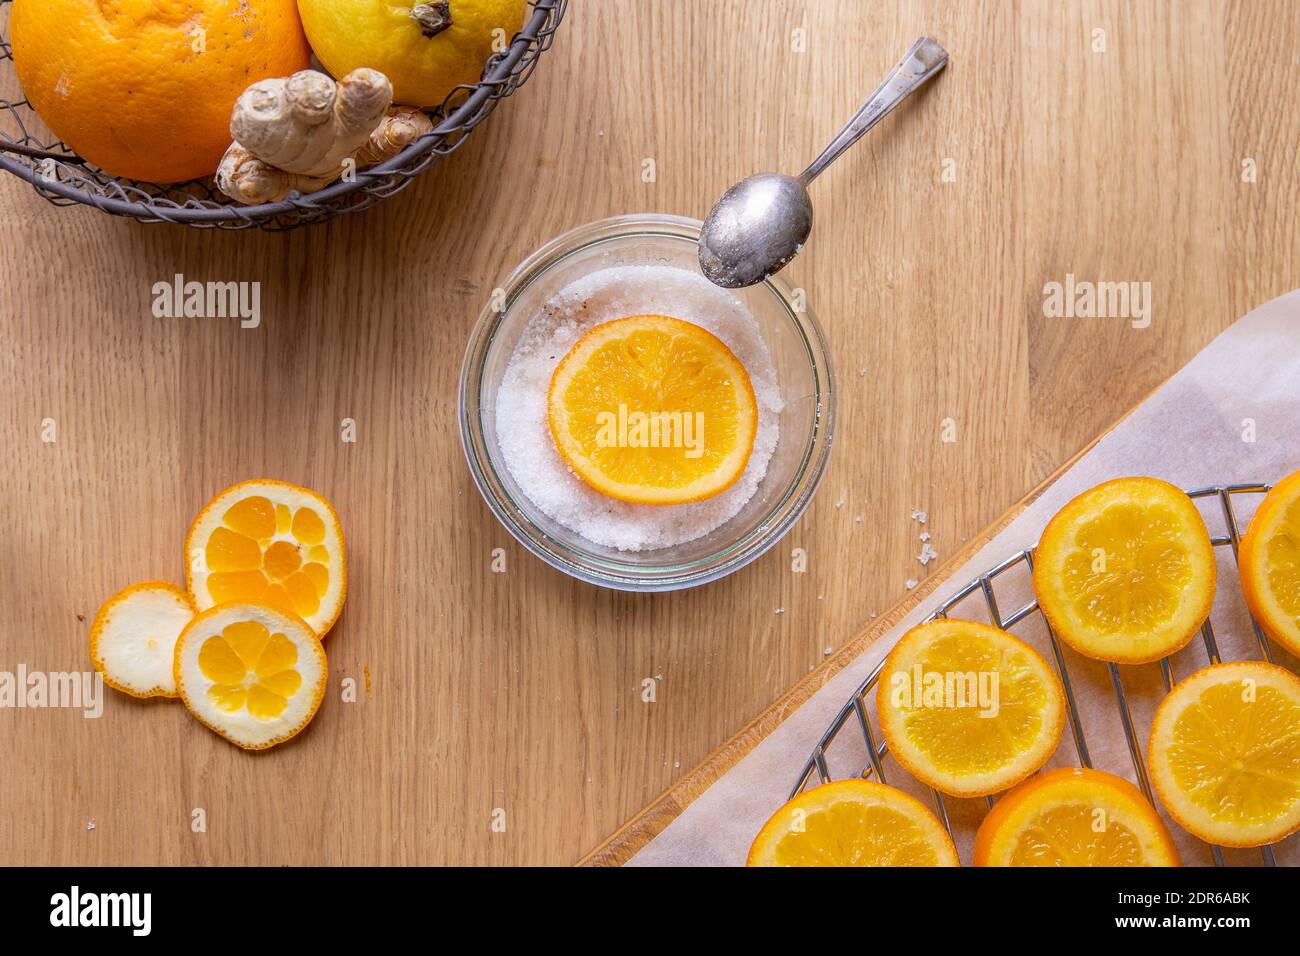 Faire des tranches d'orange confites: Table en bois avec des tranches d'orange séchées après cuisson au sirop, et un bol avec du sucre et une tranche d'orange. Banque D'Images